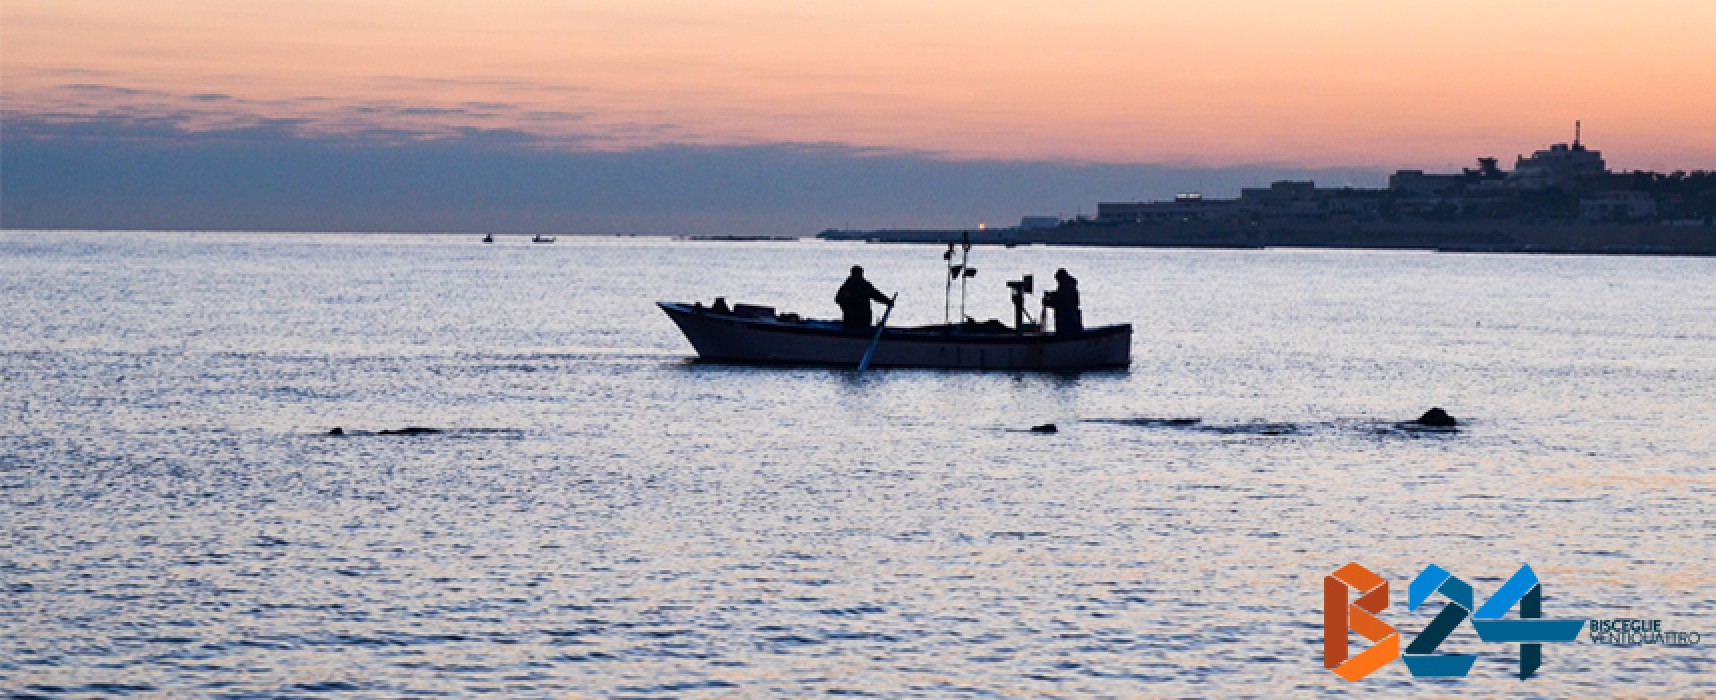 Meetup Bisceglie 5 Stelle: “Bando Gal sulla pesca, la nuova amministrazione comunale partecipi”